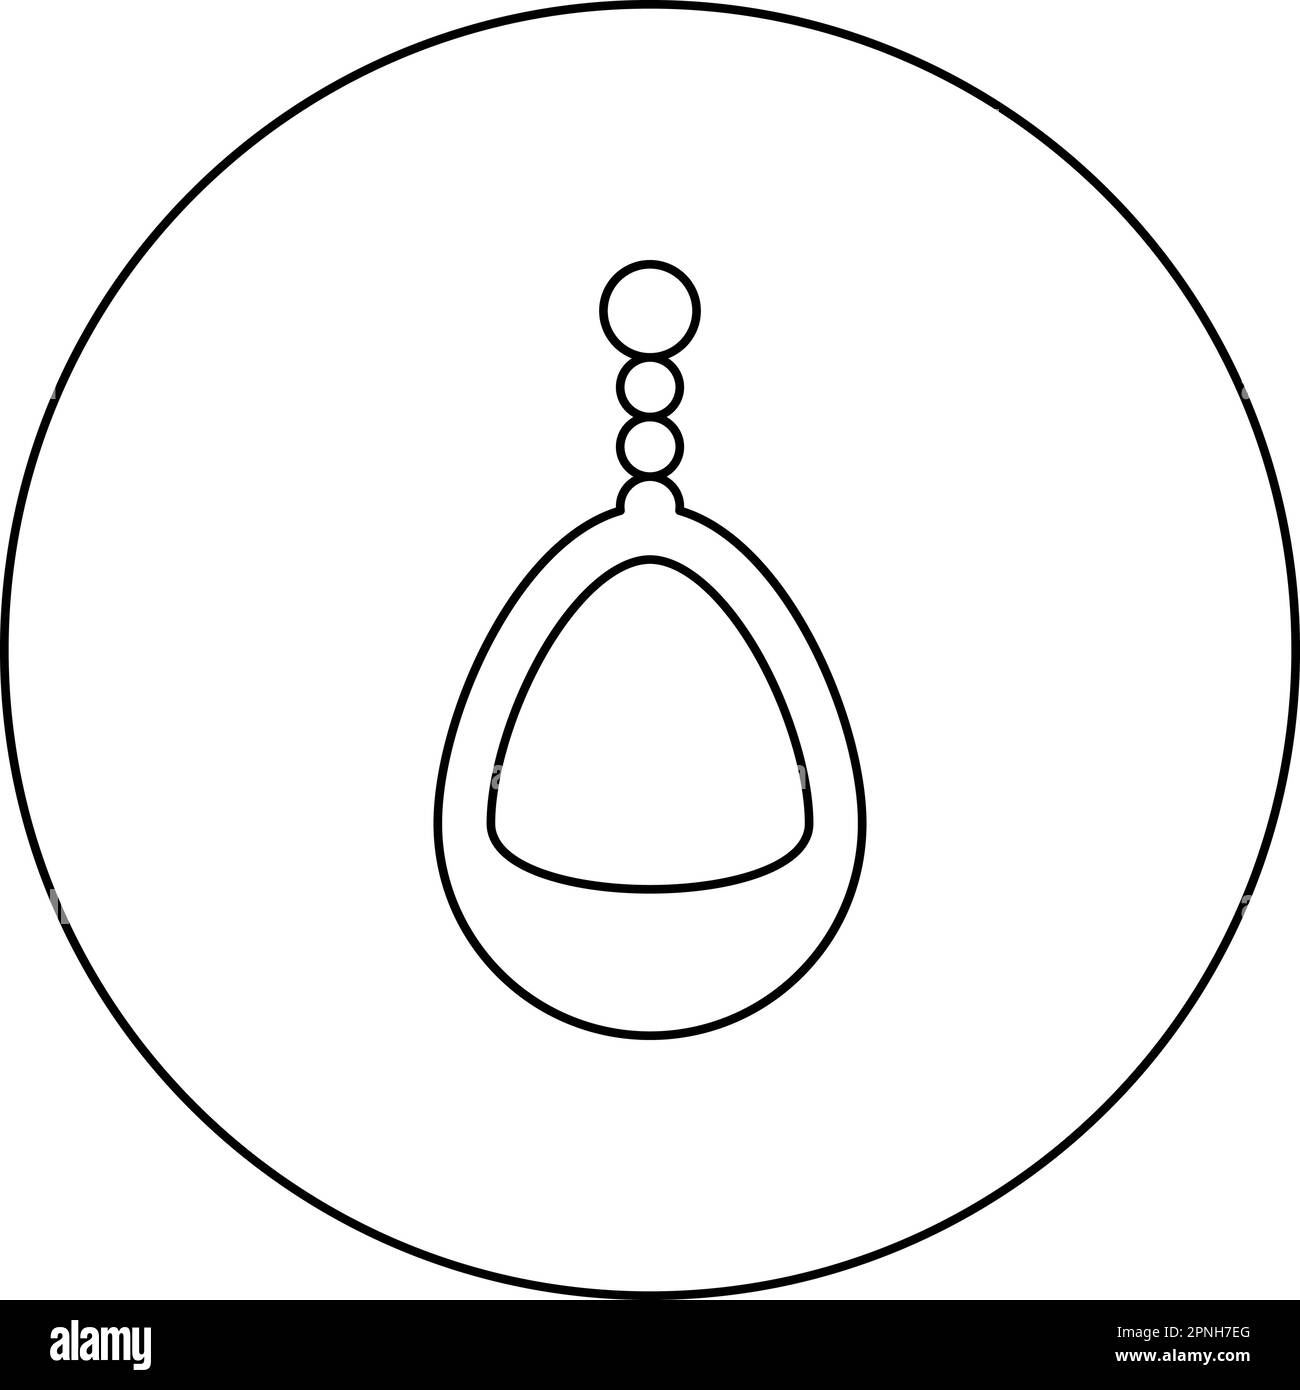 Ohrring Schmuck Anhänger Ohrringe Luxus Bijou Edelstein Bijouterie Verzierung Symbol in kreisförmigem, rundem, schwarzem Vektorsymbol Stock Vektor